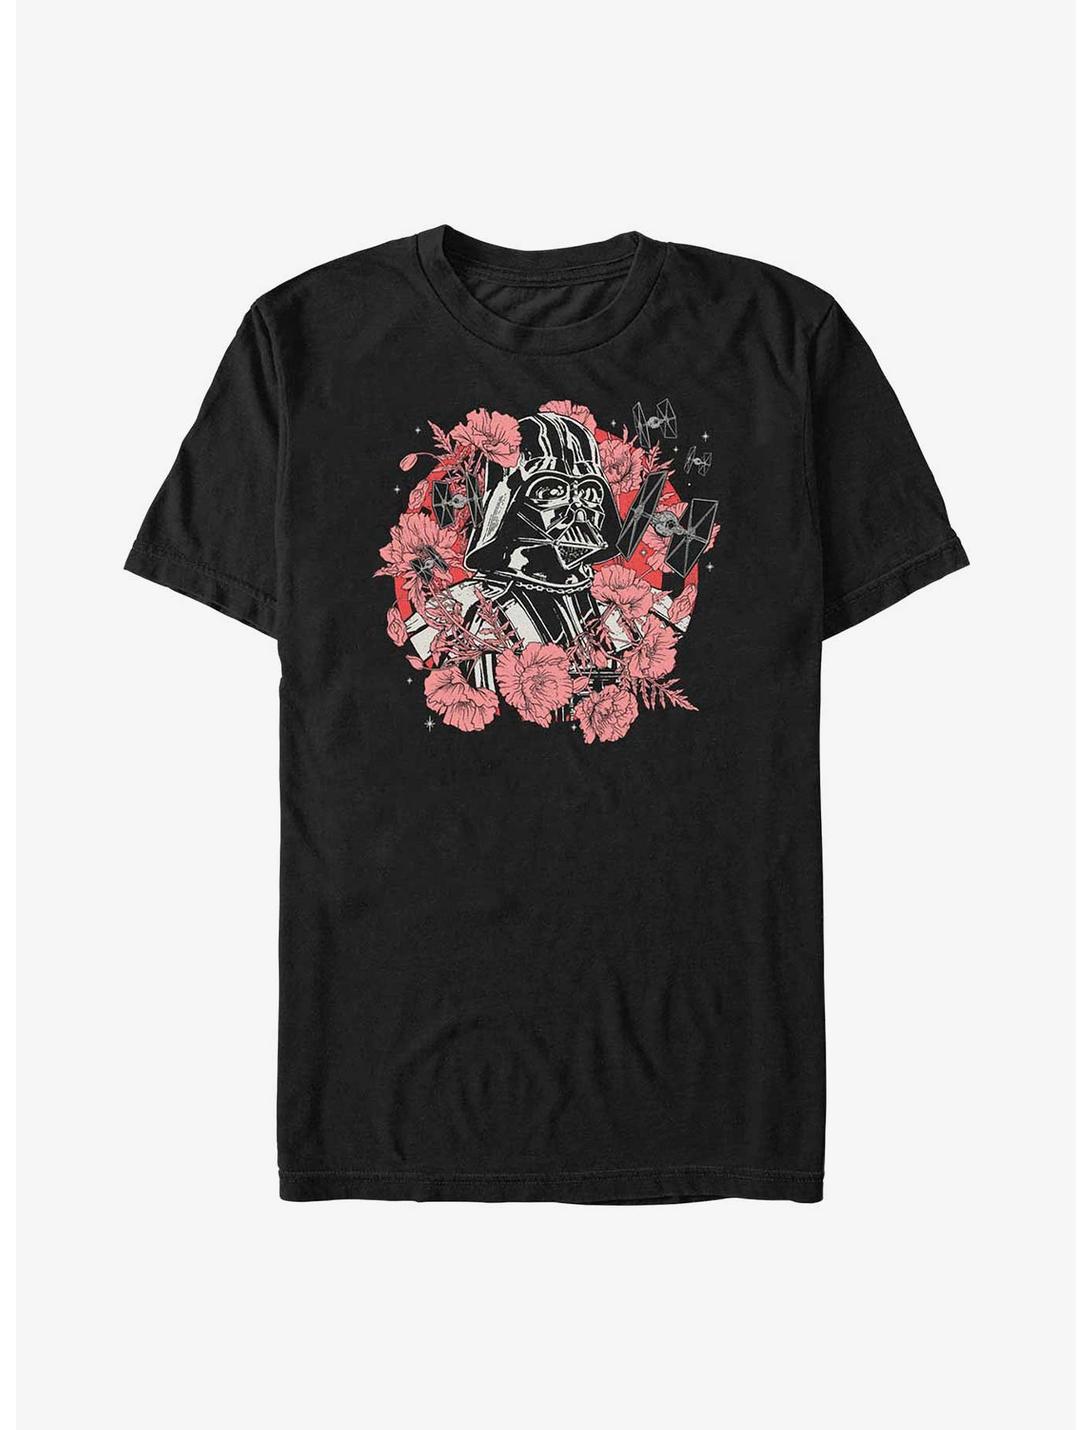 Star Wars Floral Vader T-Shirt, BLACK, hi-res